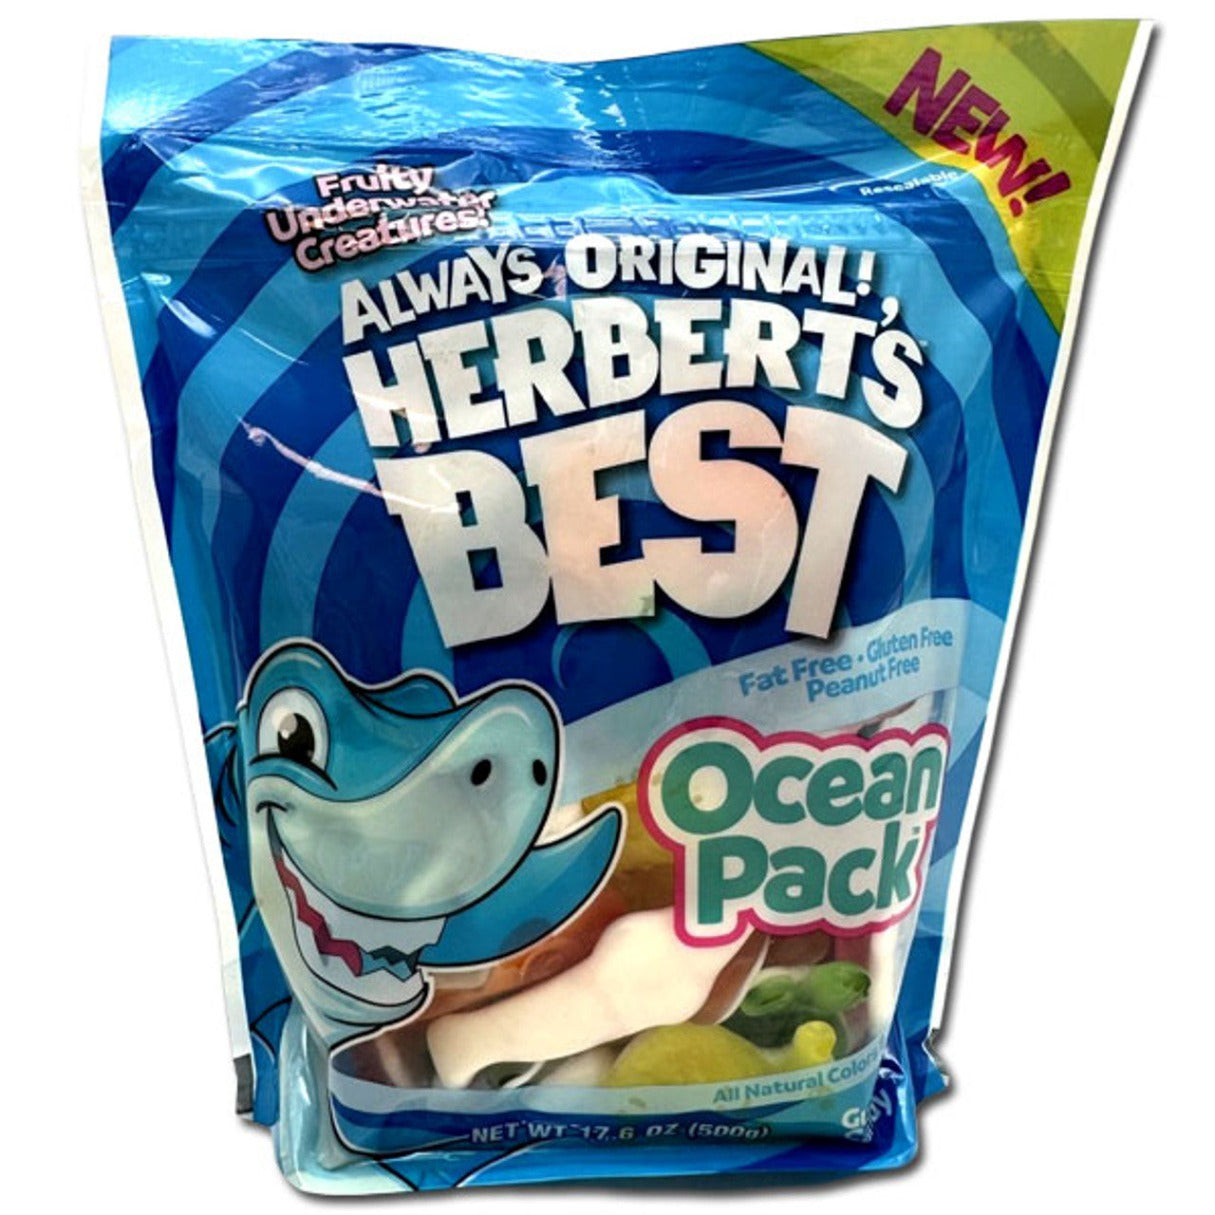 Efrutti Herbert's Best Ocean Pack  17.6oz - 12ct